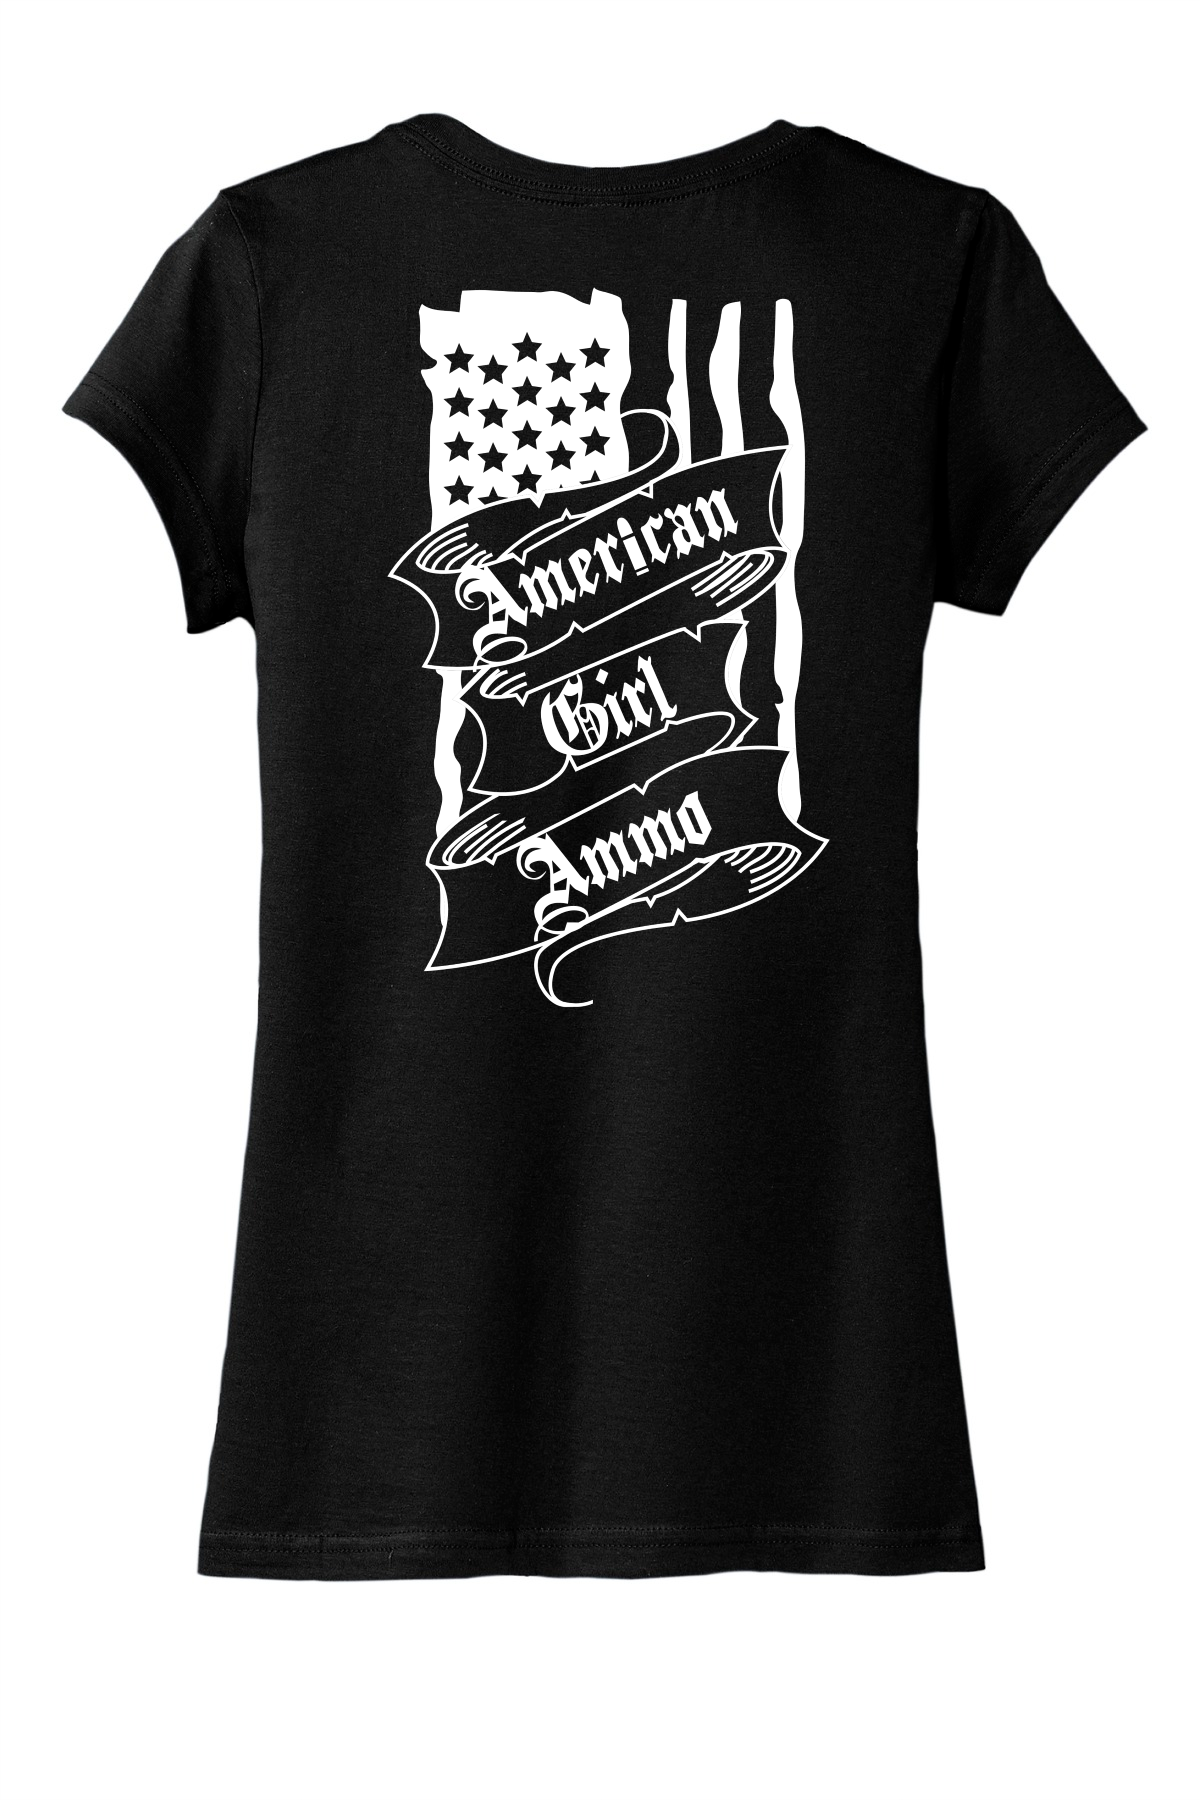 AR- Women's T-Shirt